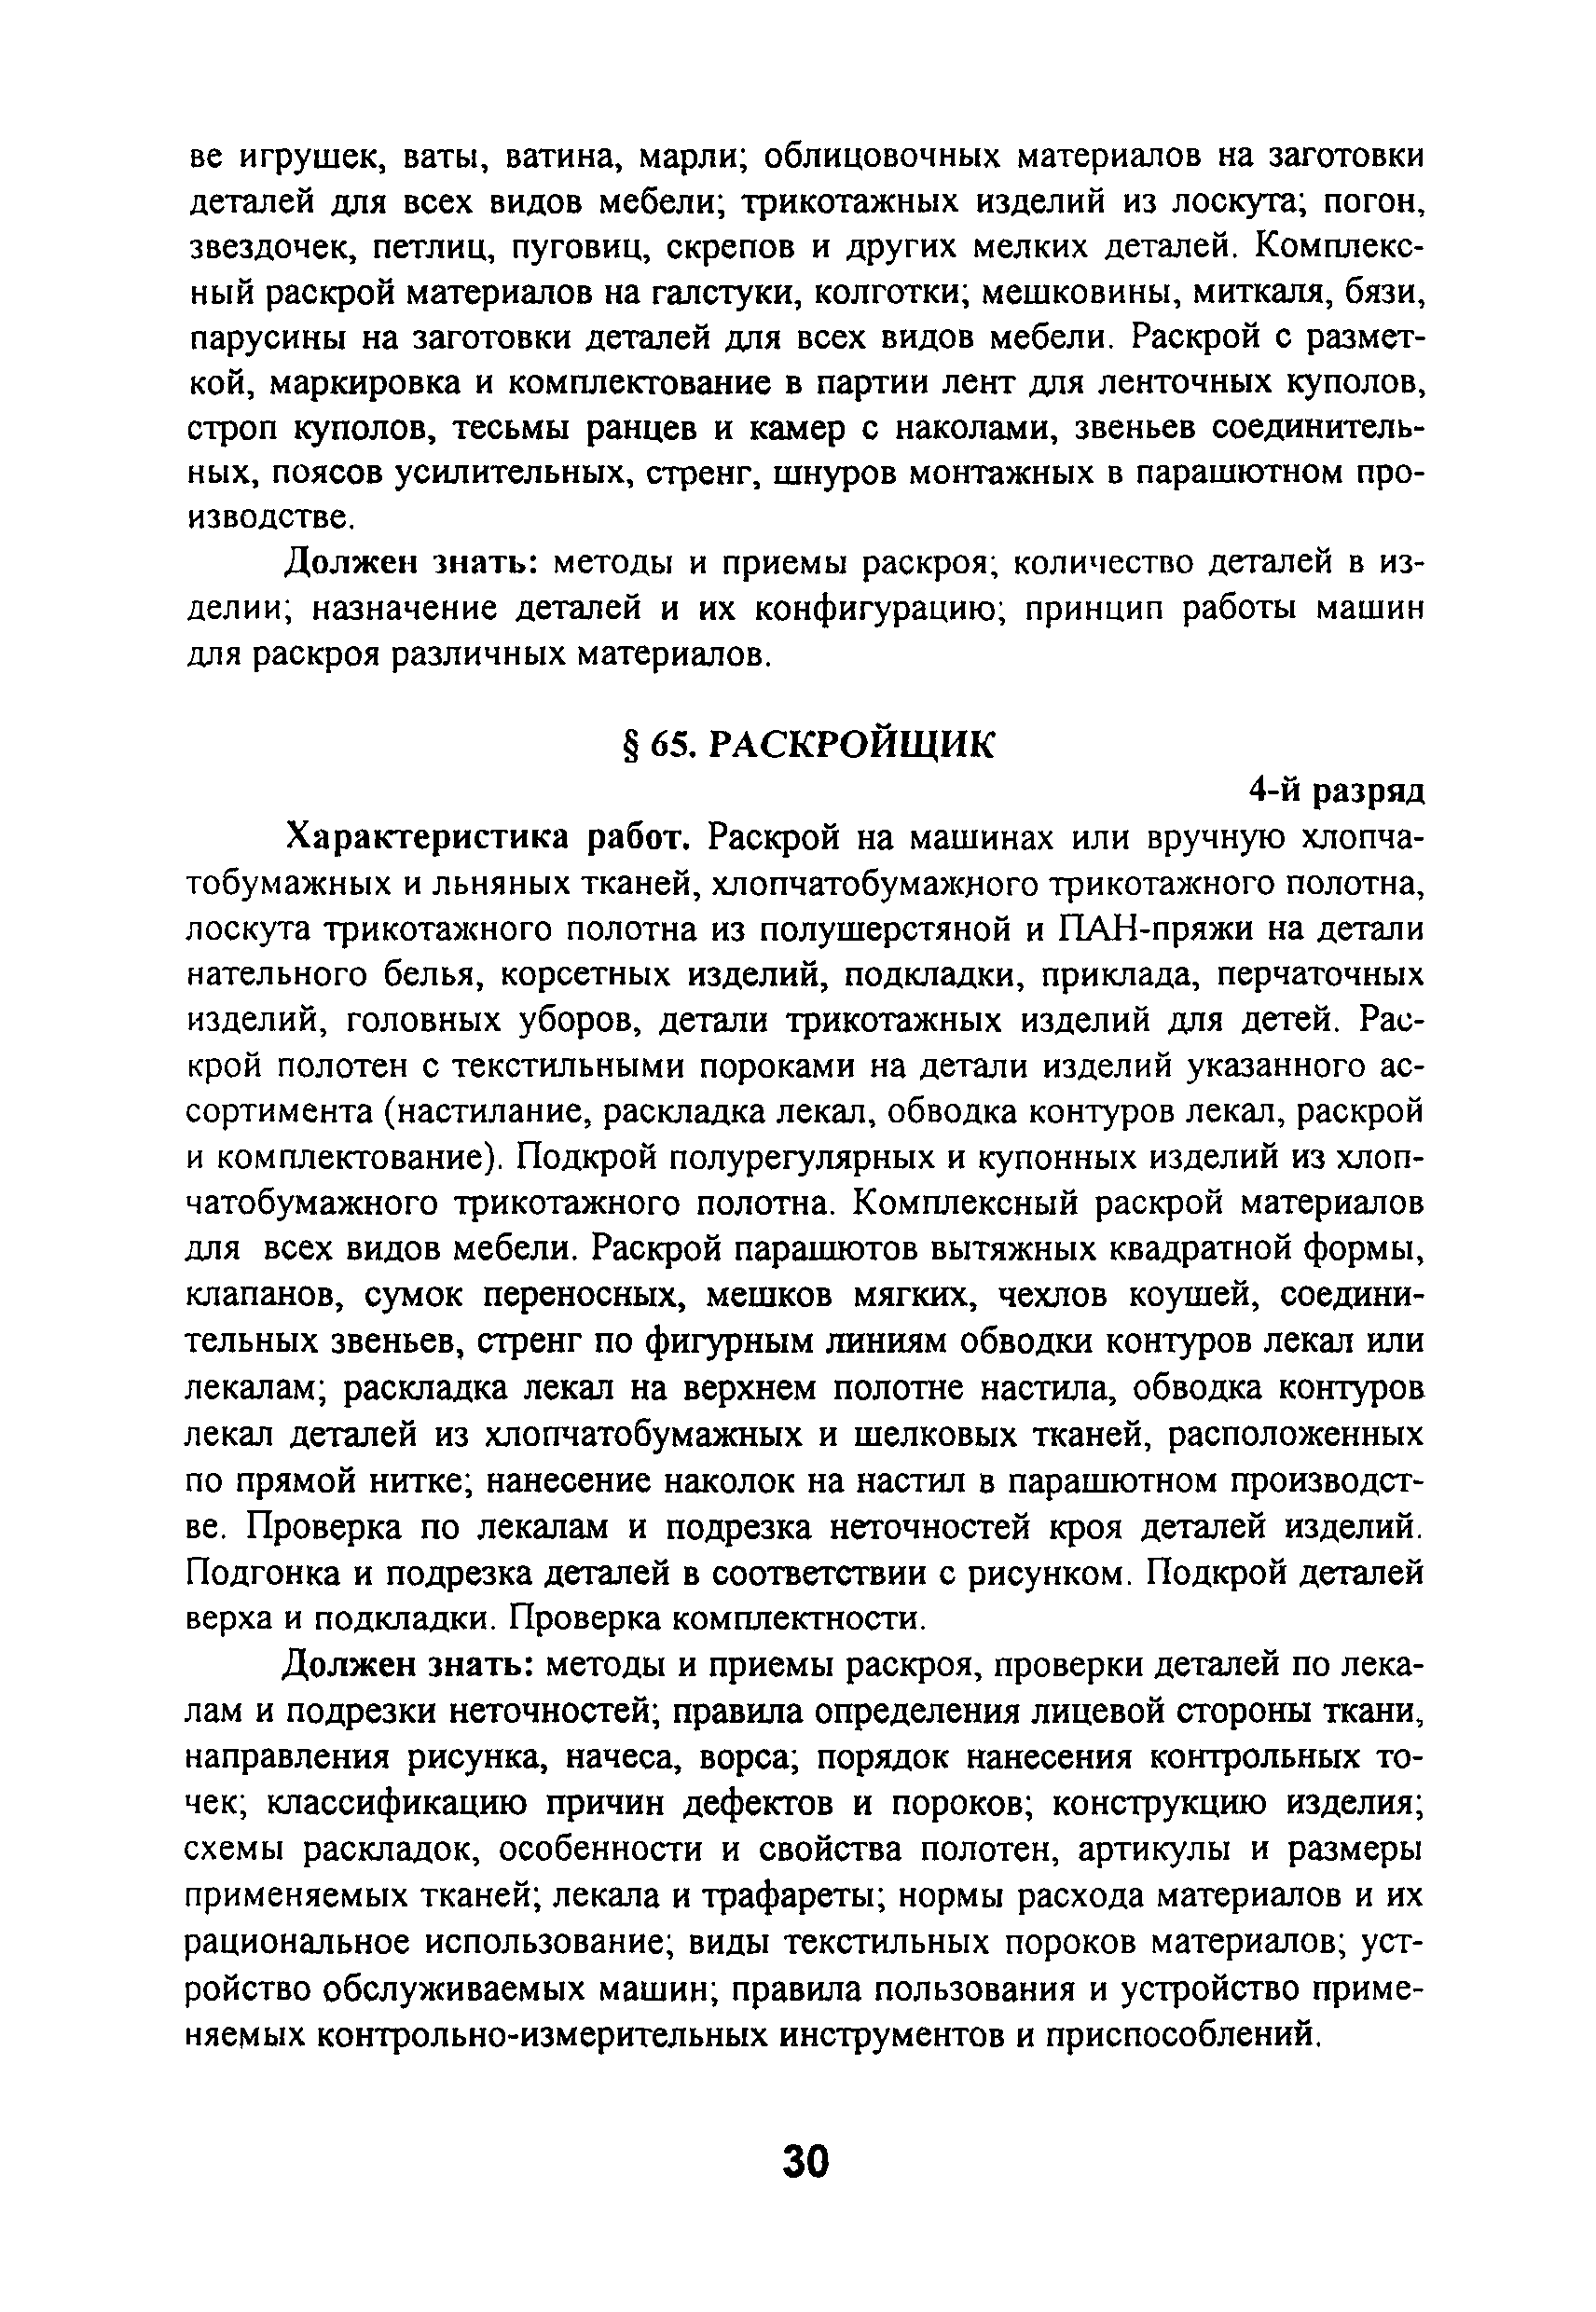 ЕТКС Выпуск 46